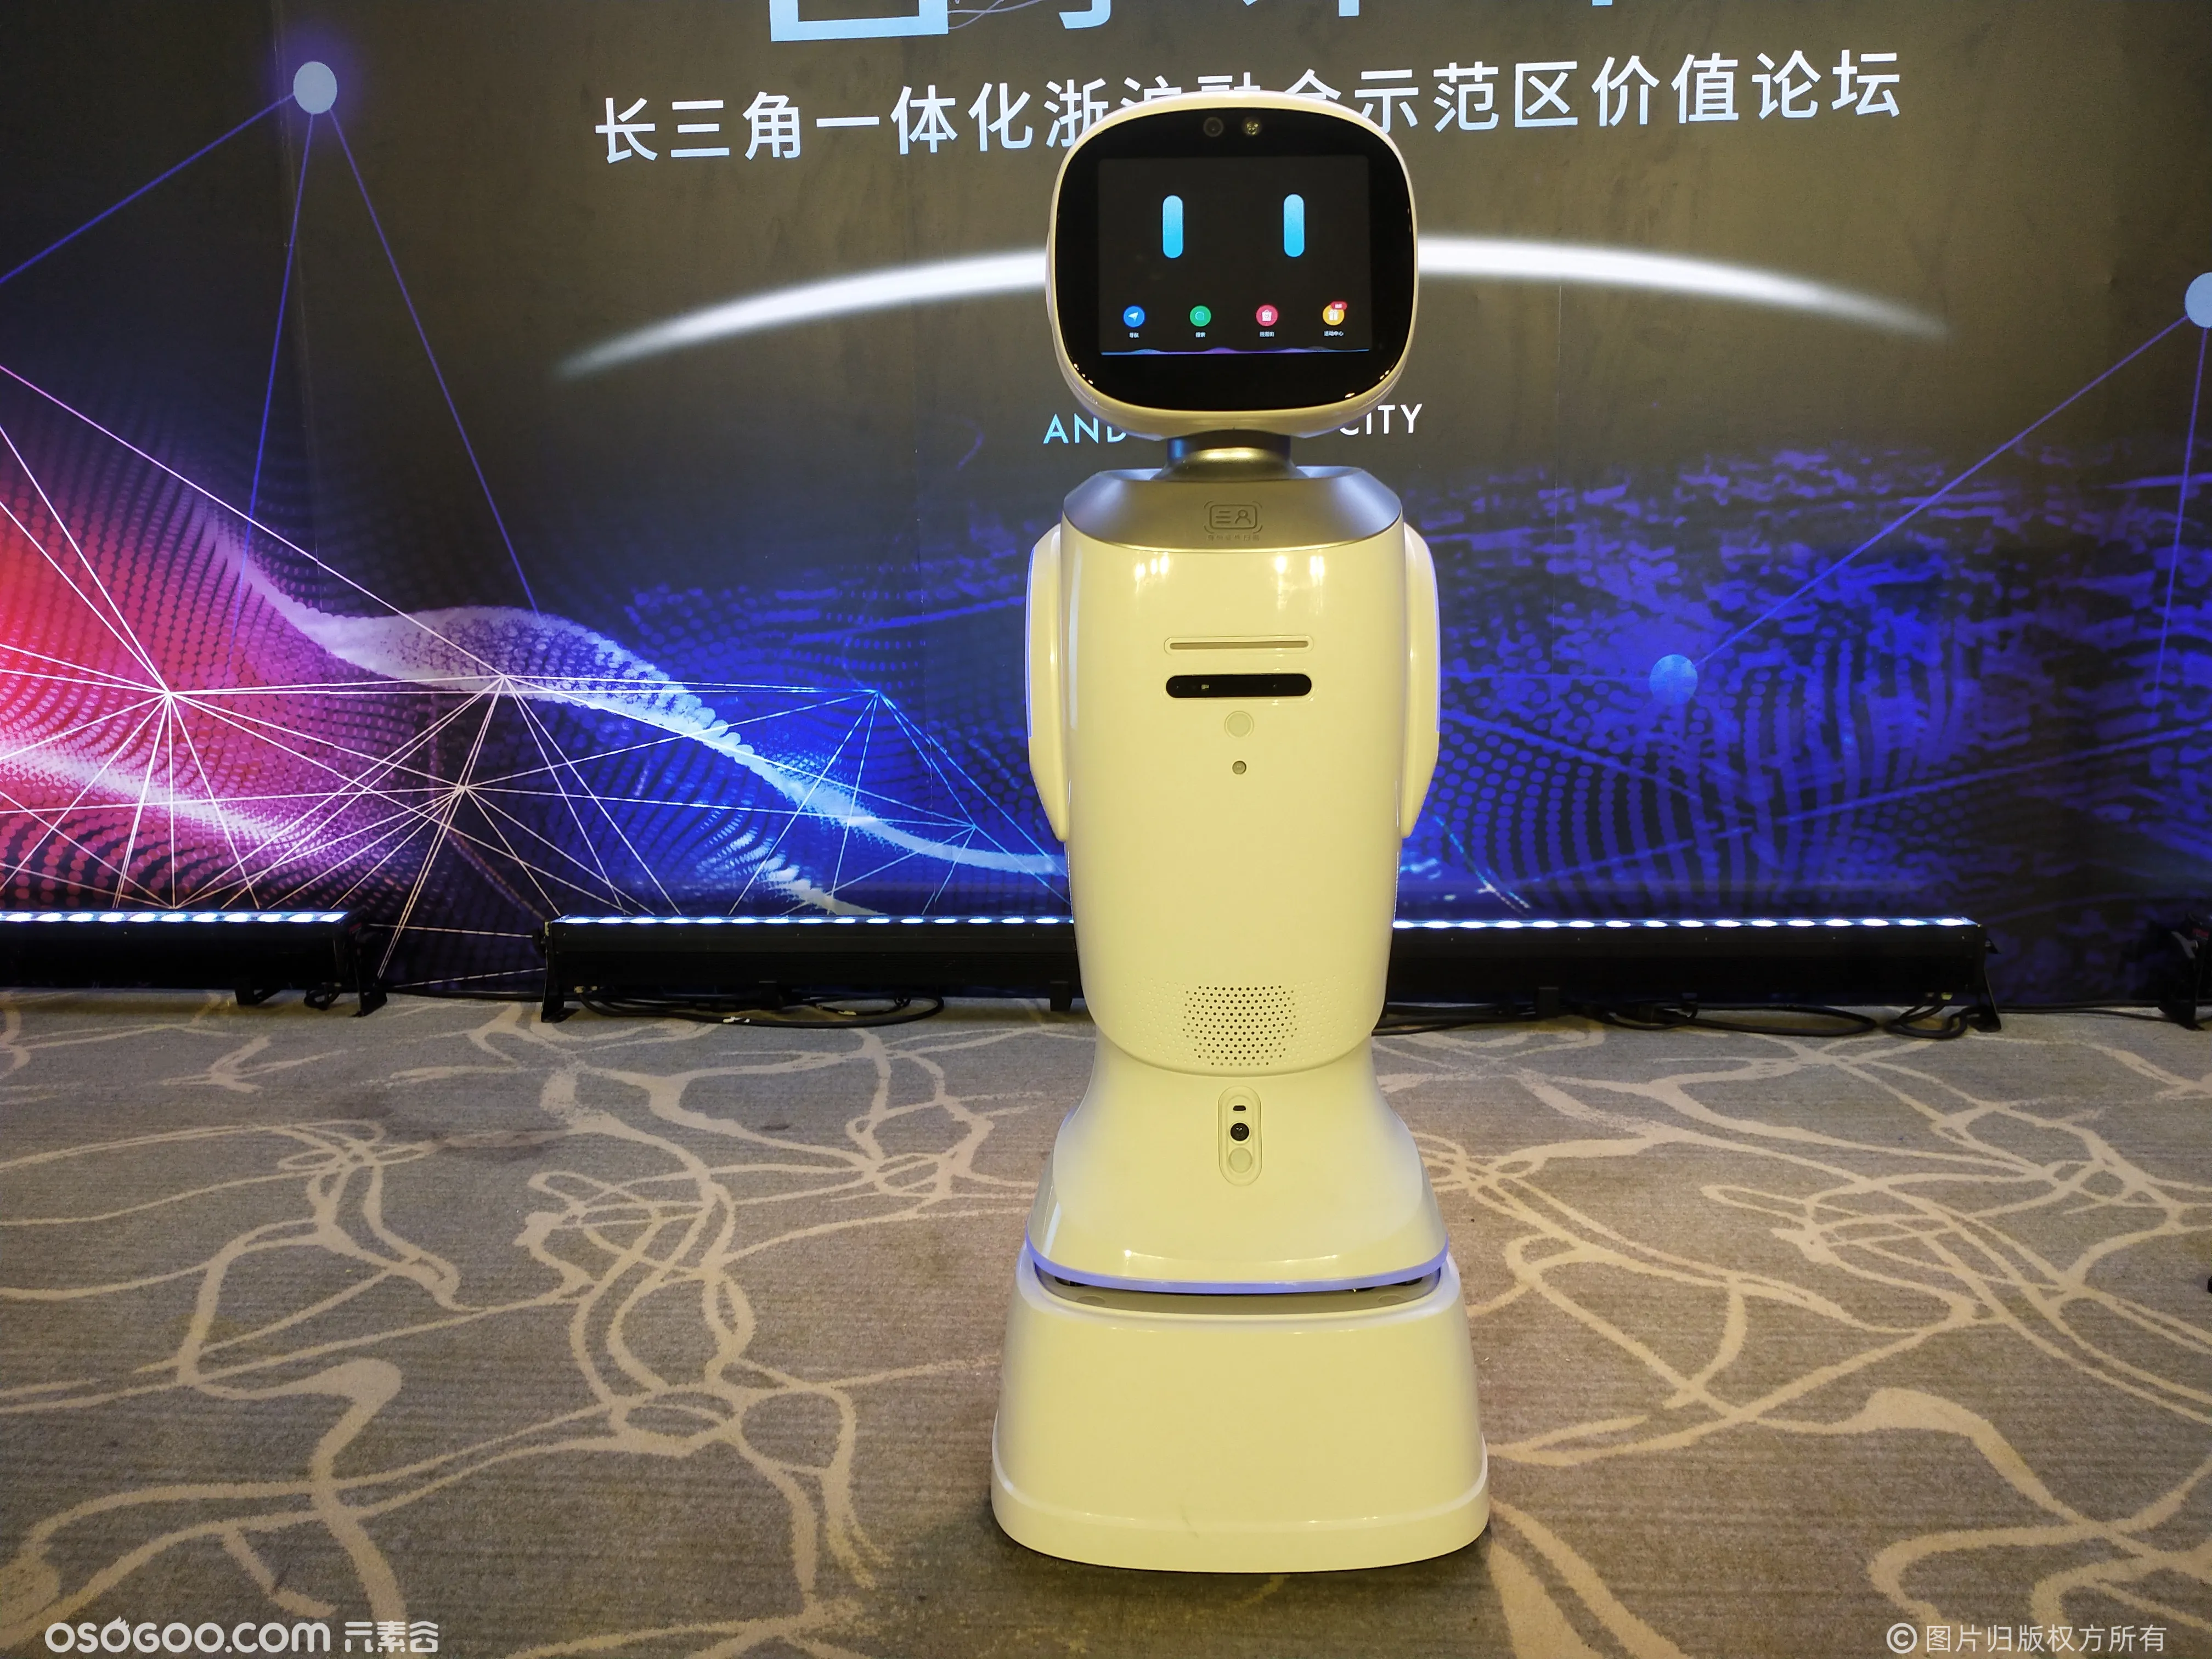 上海金茂地产会议活动 机器人茂茂互动主持 迎宾接待 咨询问答